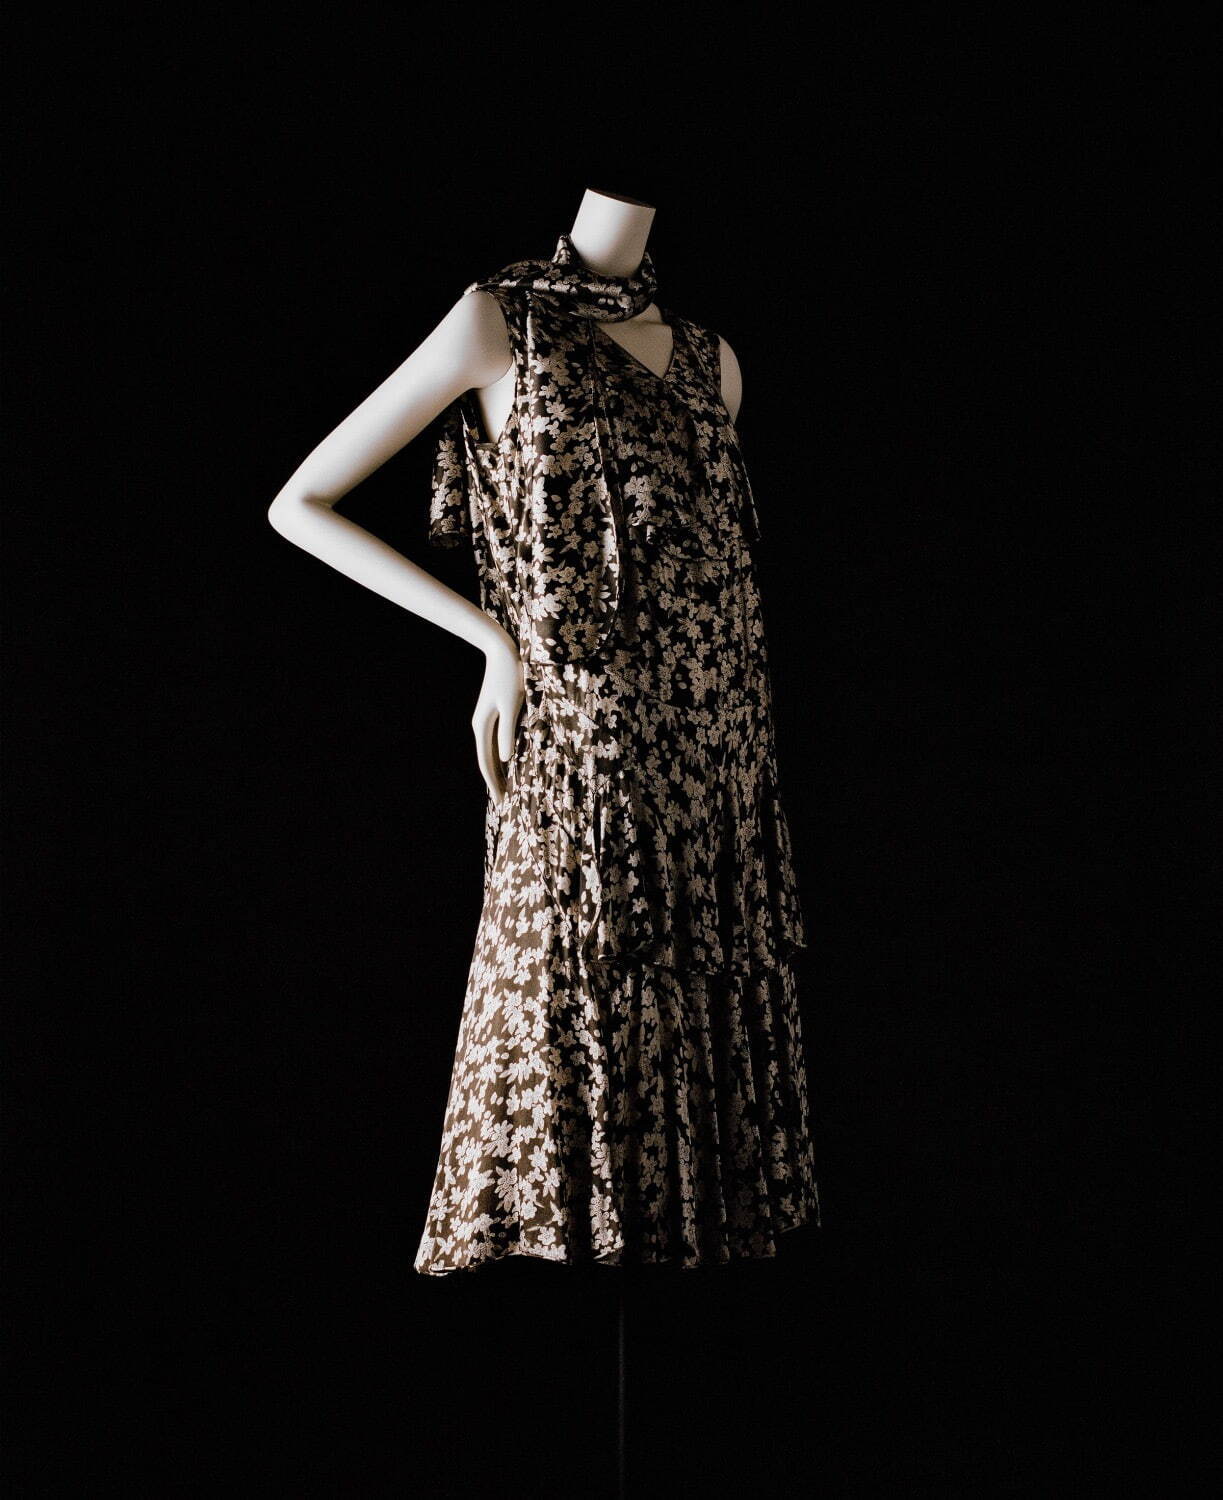 ガブリエル・シャネル ドレスとスカーフのアンサンブル
1930年頃 プリントのクレープ・デシン パリ、ガリエラ宮、ベルタン夫人より寄贈
©Julien T. Hamon